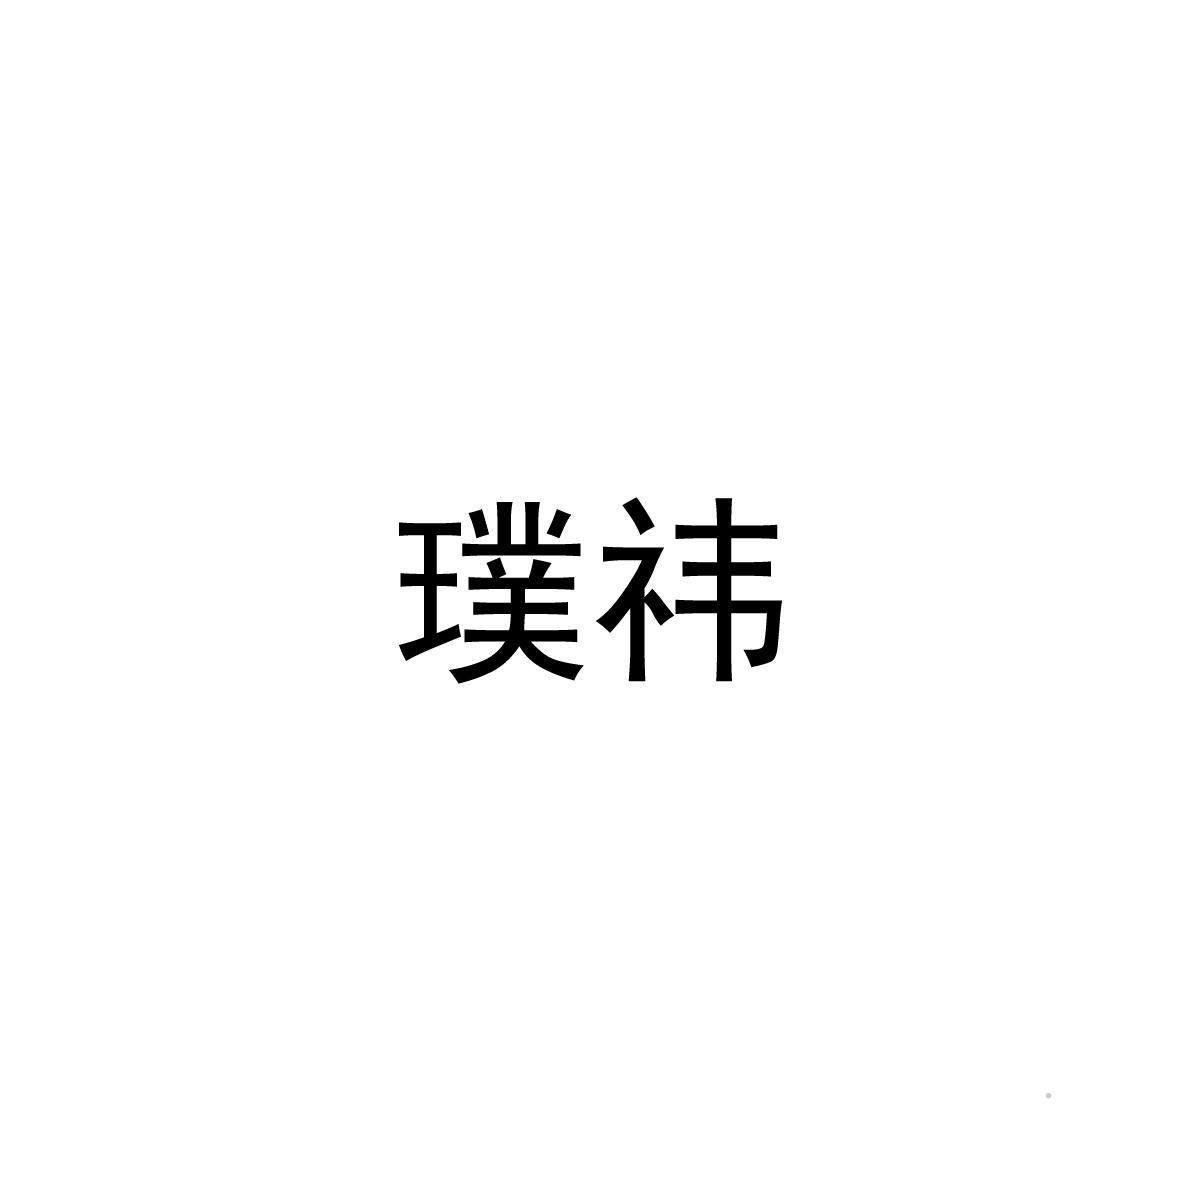 璞祎logo